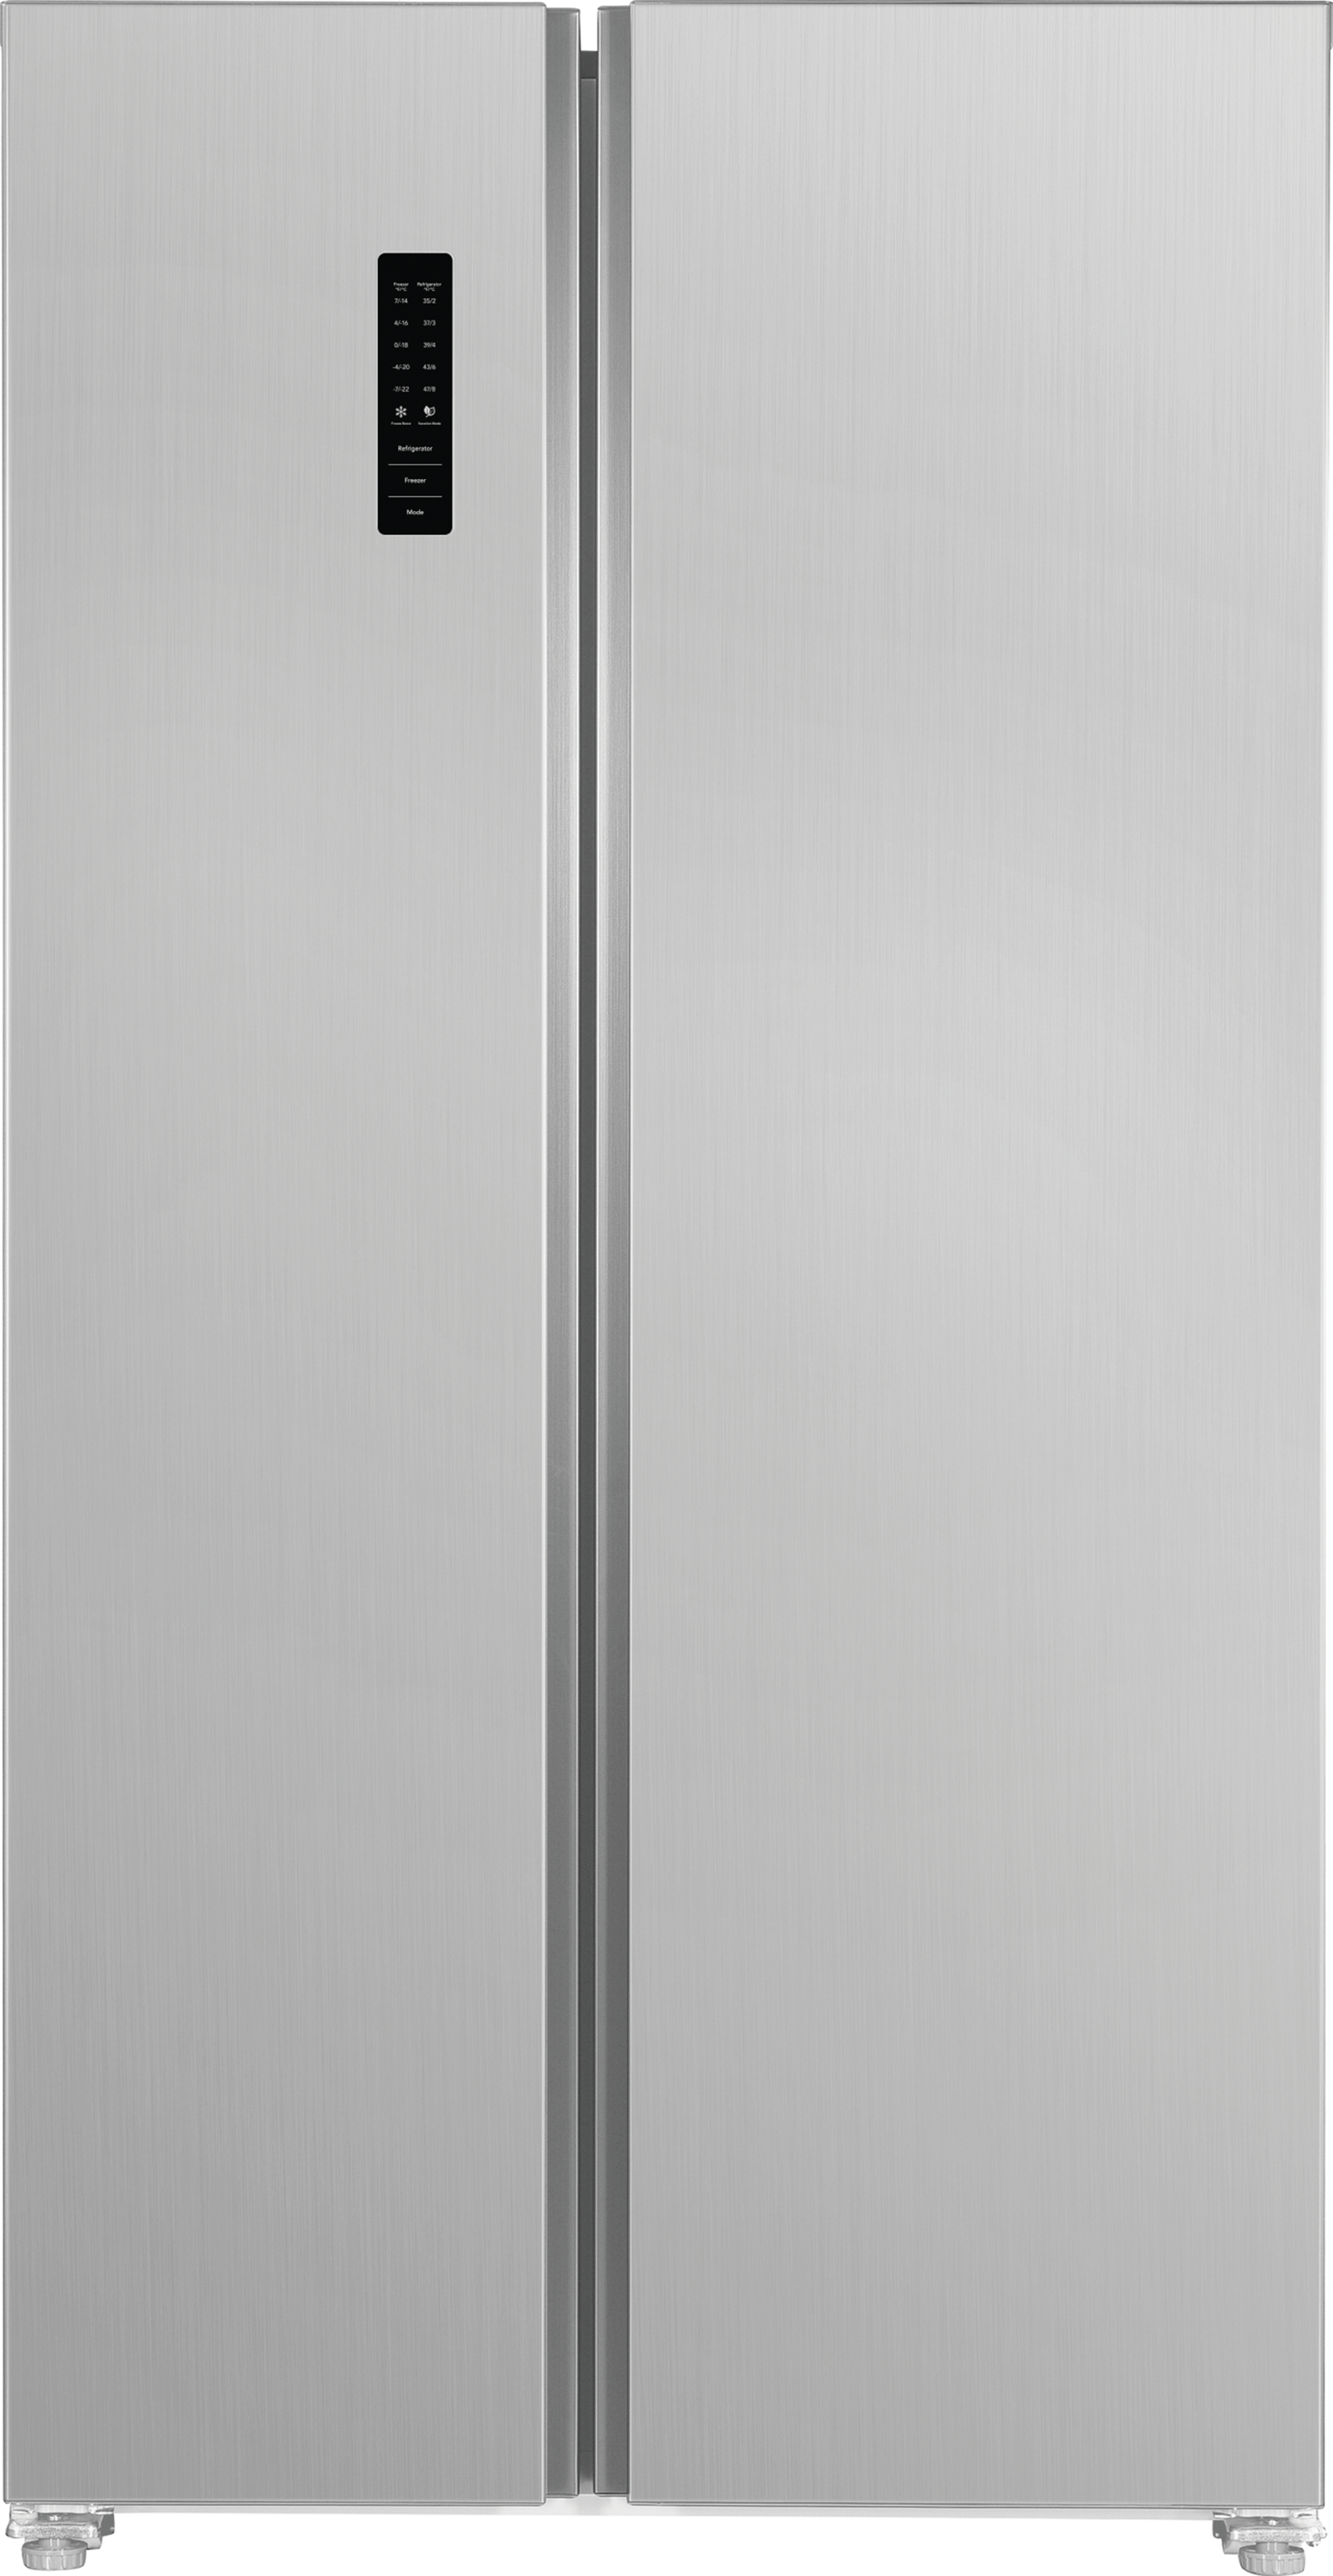 nonhandle fridge with digital touch screen on door